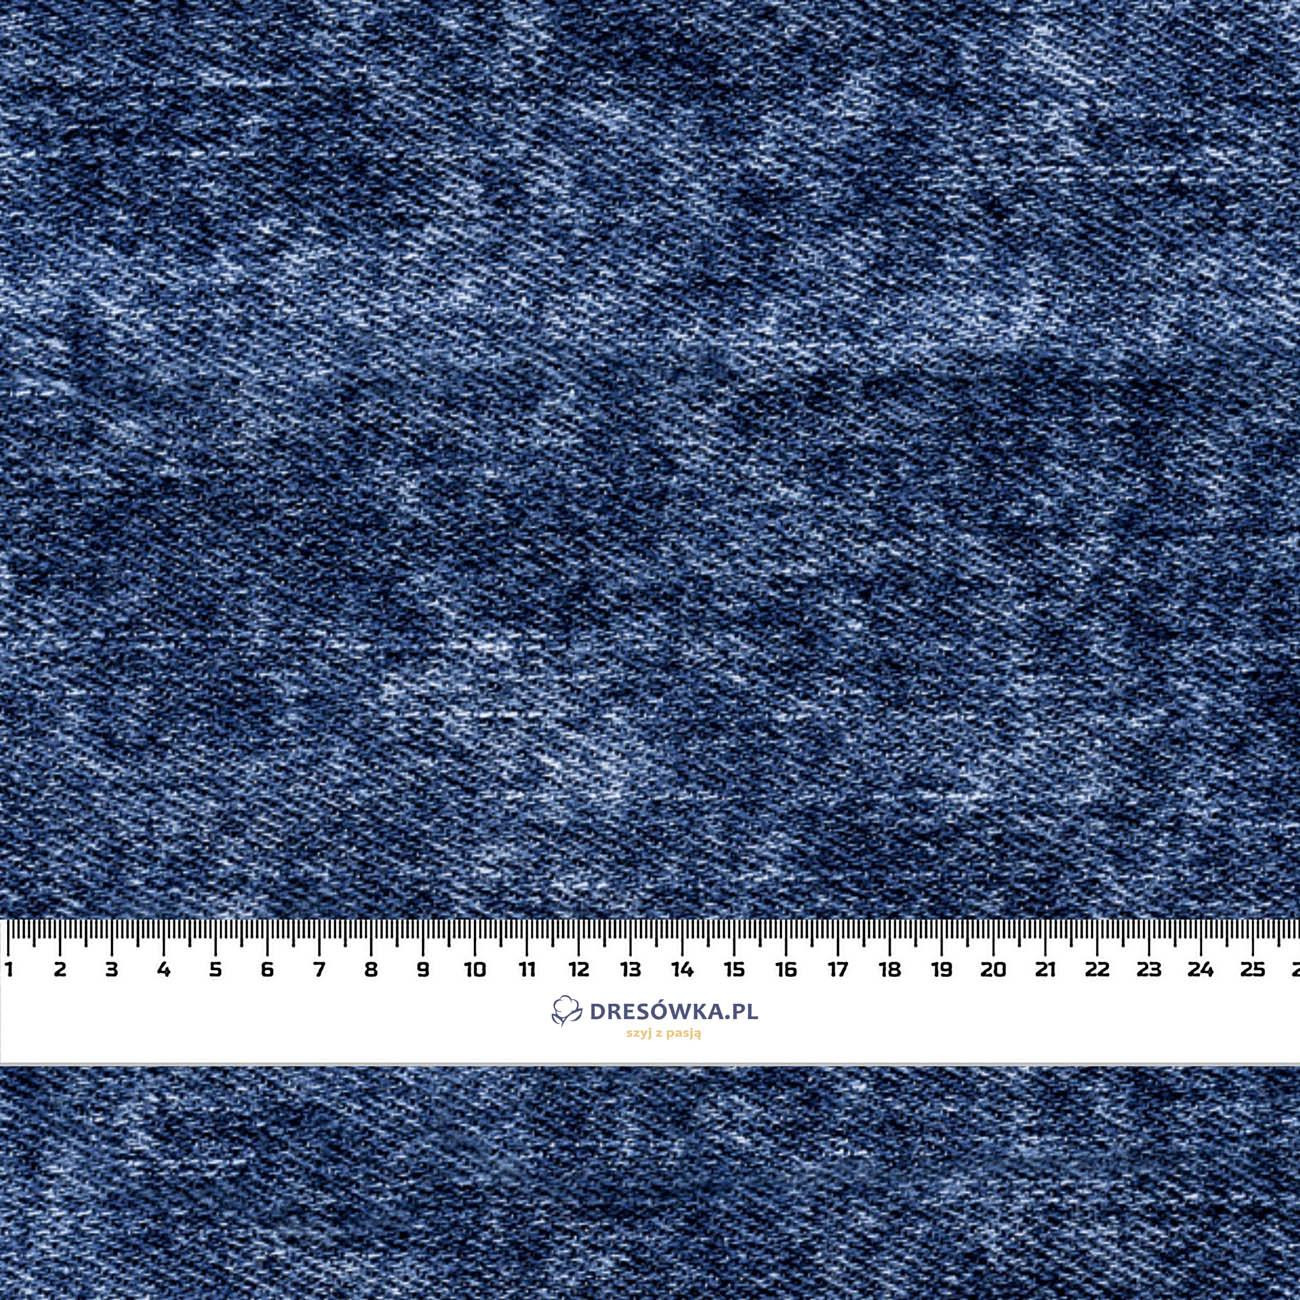 VINTAGE LOOK JEANS (dark blue) - Waterproof woven fabric